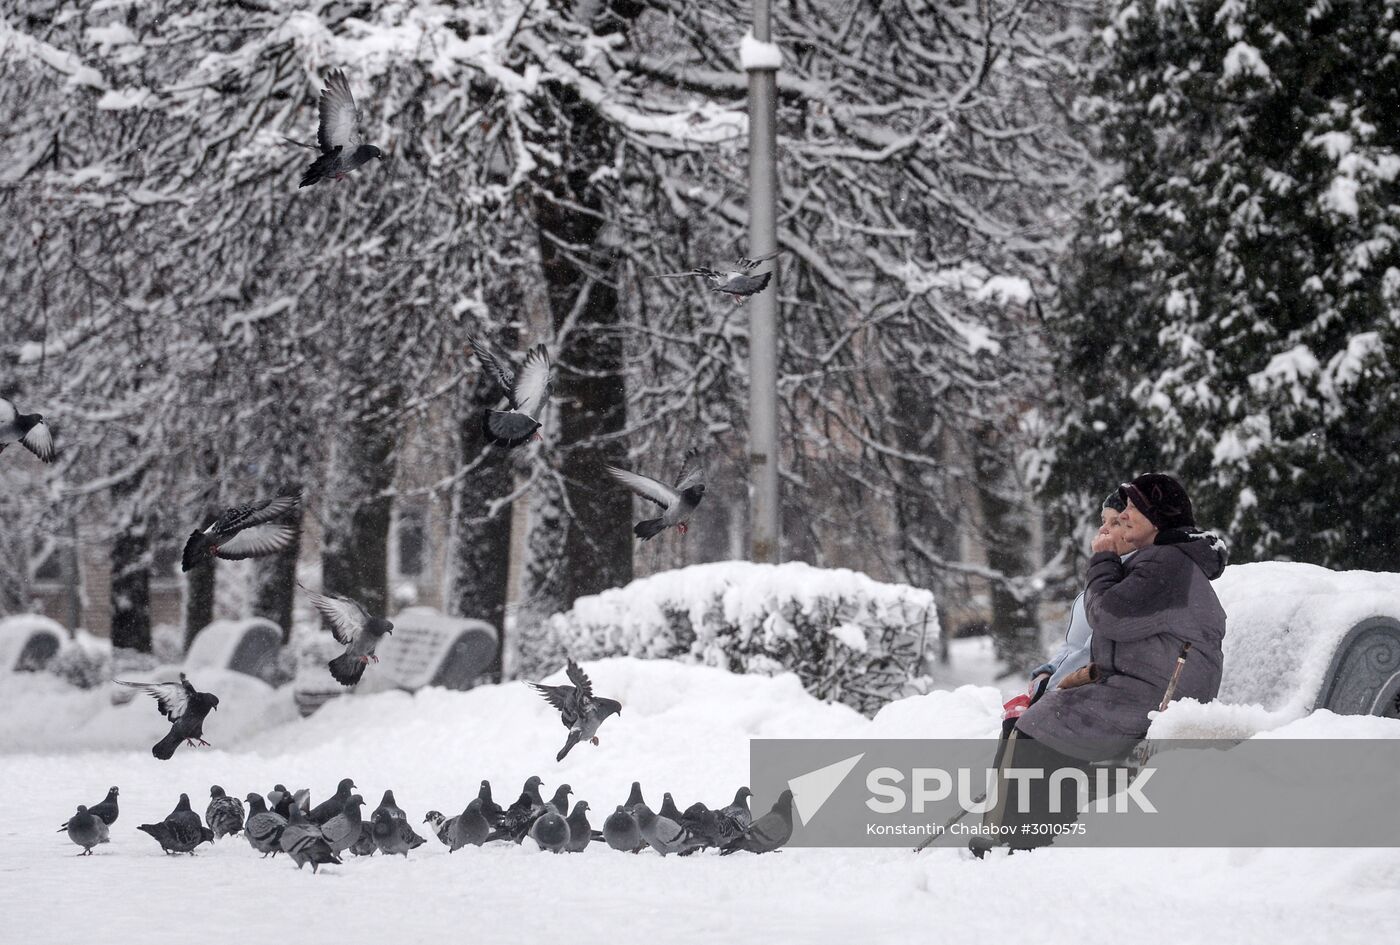 Winter in Veliky Novgorod